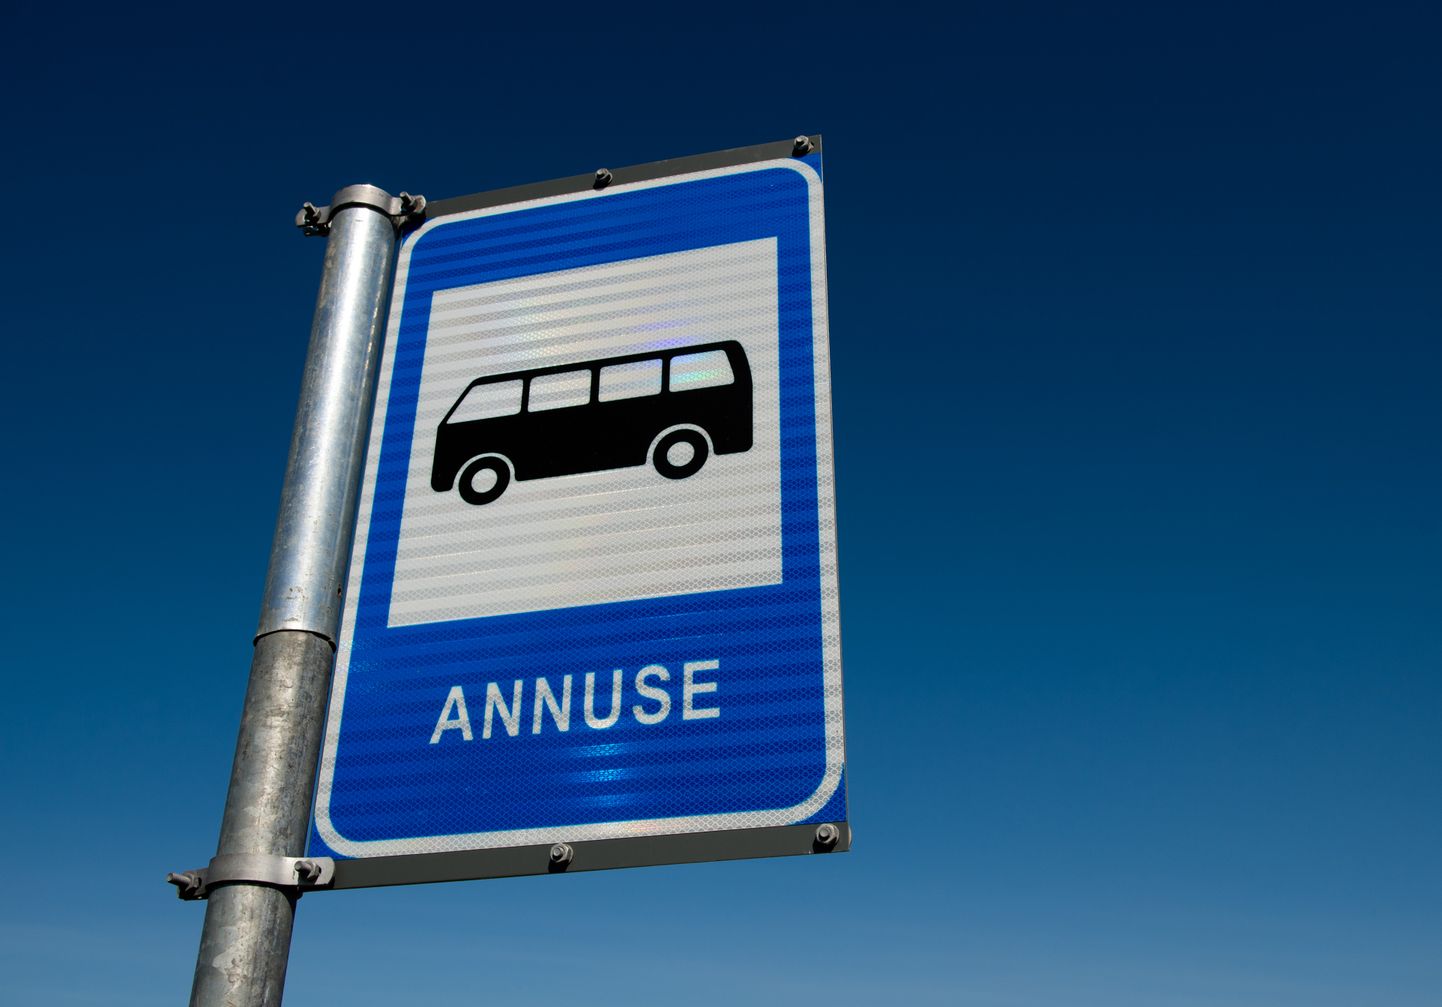 Tallinnast mõne külje all asuv Annuse on üks esimesi Eesti fantoombussipeatusi.